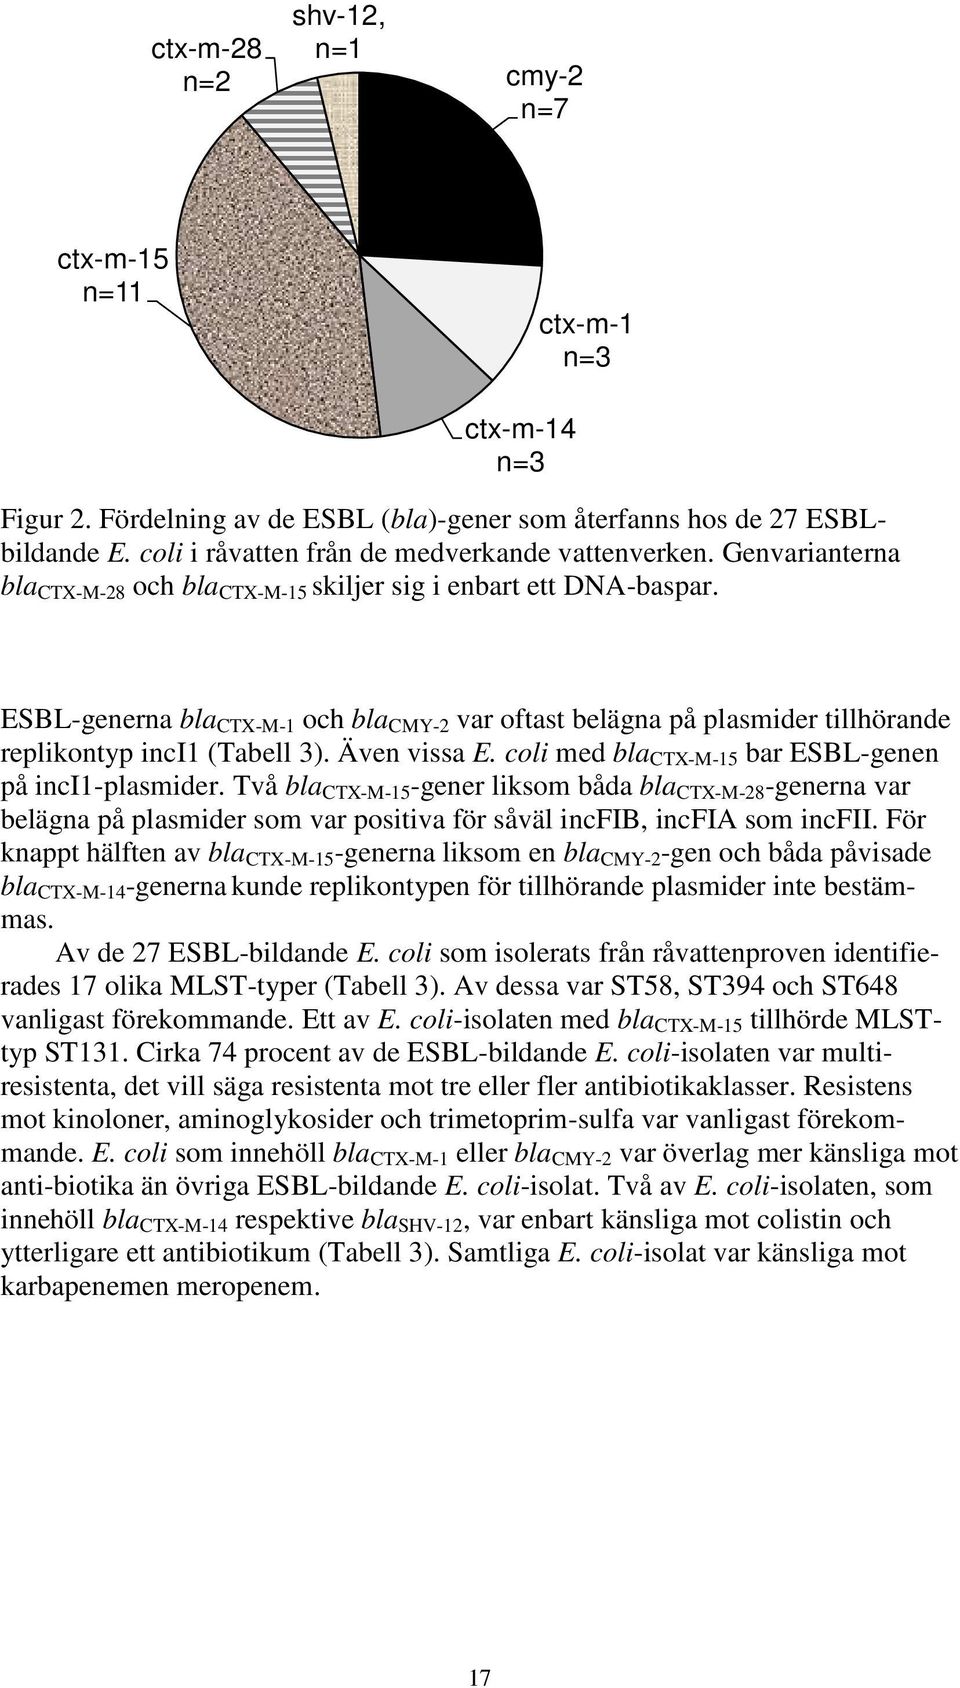 ESBL-generna bla CTX-M-1 och bla CMY-2 var oftast belägna på plasmider tillhörande replikontyp inci1 (Tabell 3). Även vissa E. coli med bla CTX-M-15 bar ESBL-genen på inci1-plasmider.